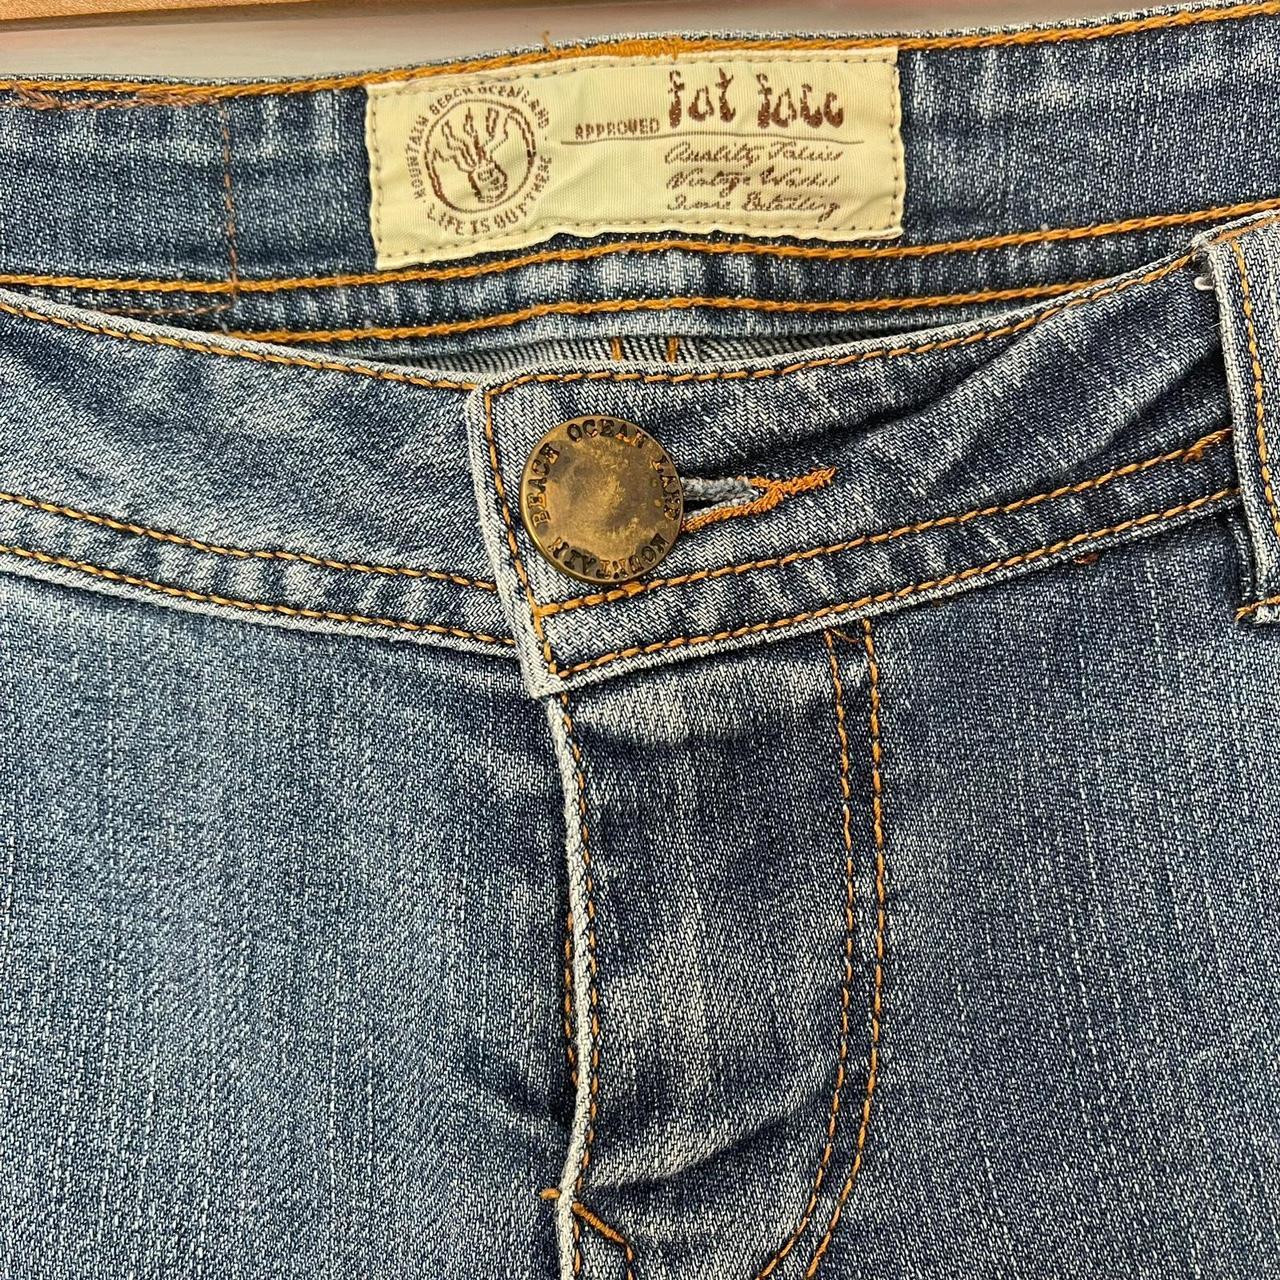 Fat Face jeans, UK size 6 regular, blue denim 3/4... - Depop